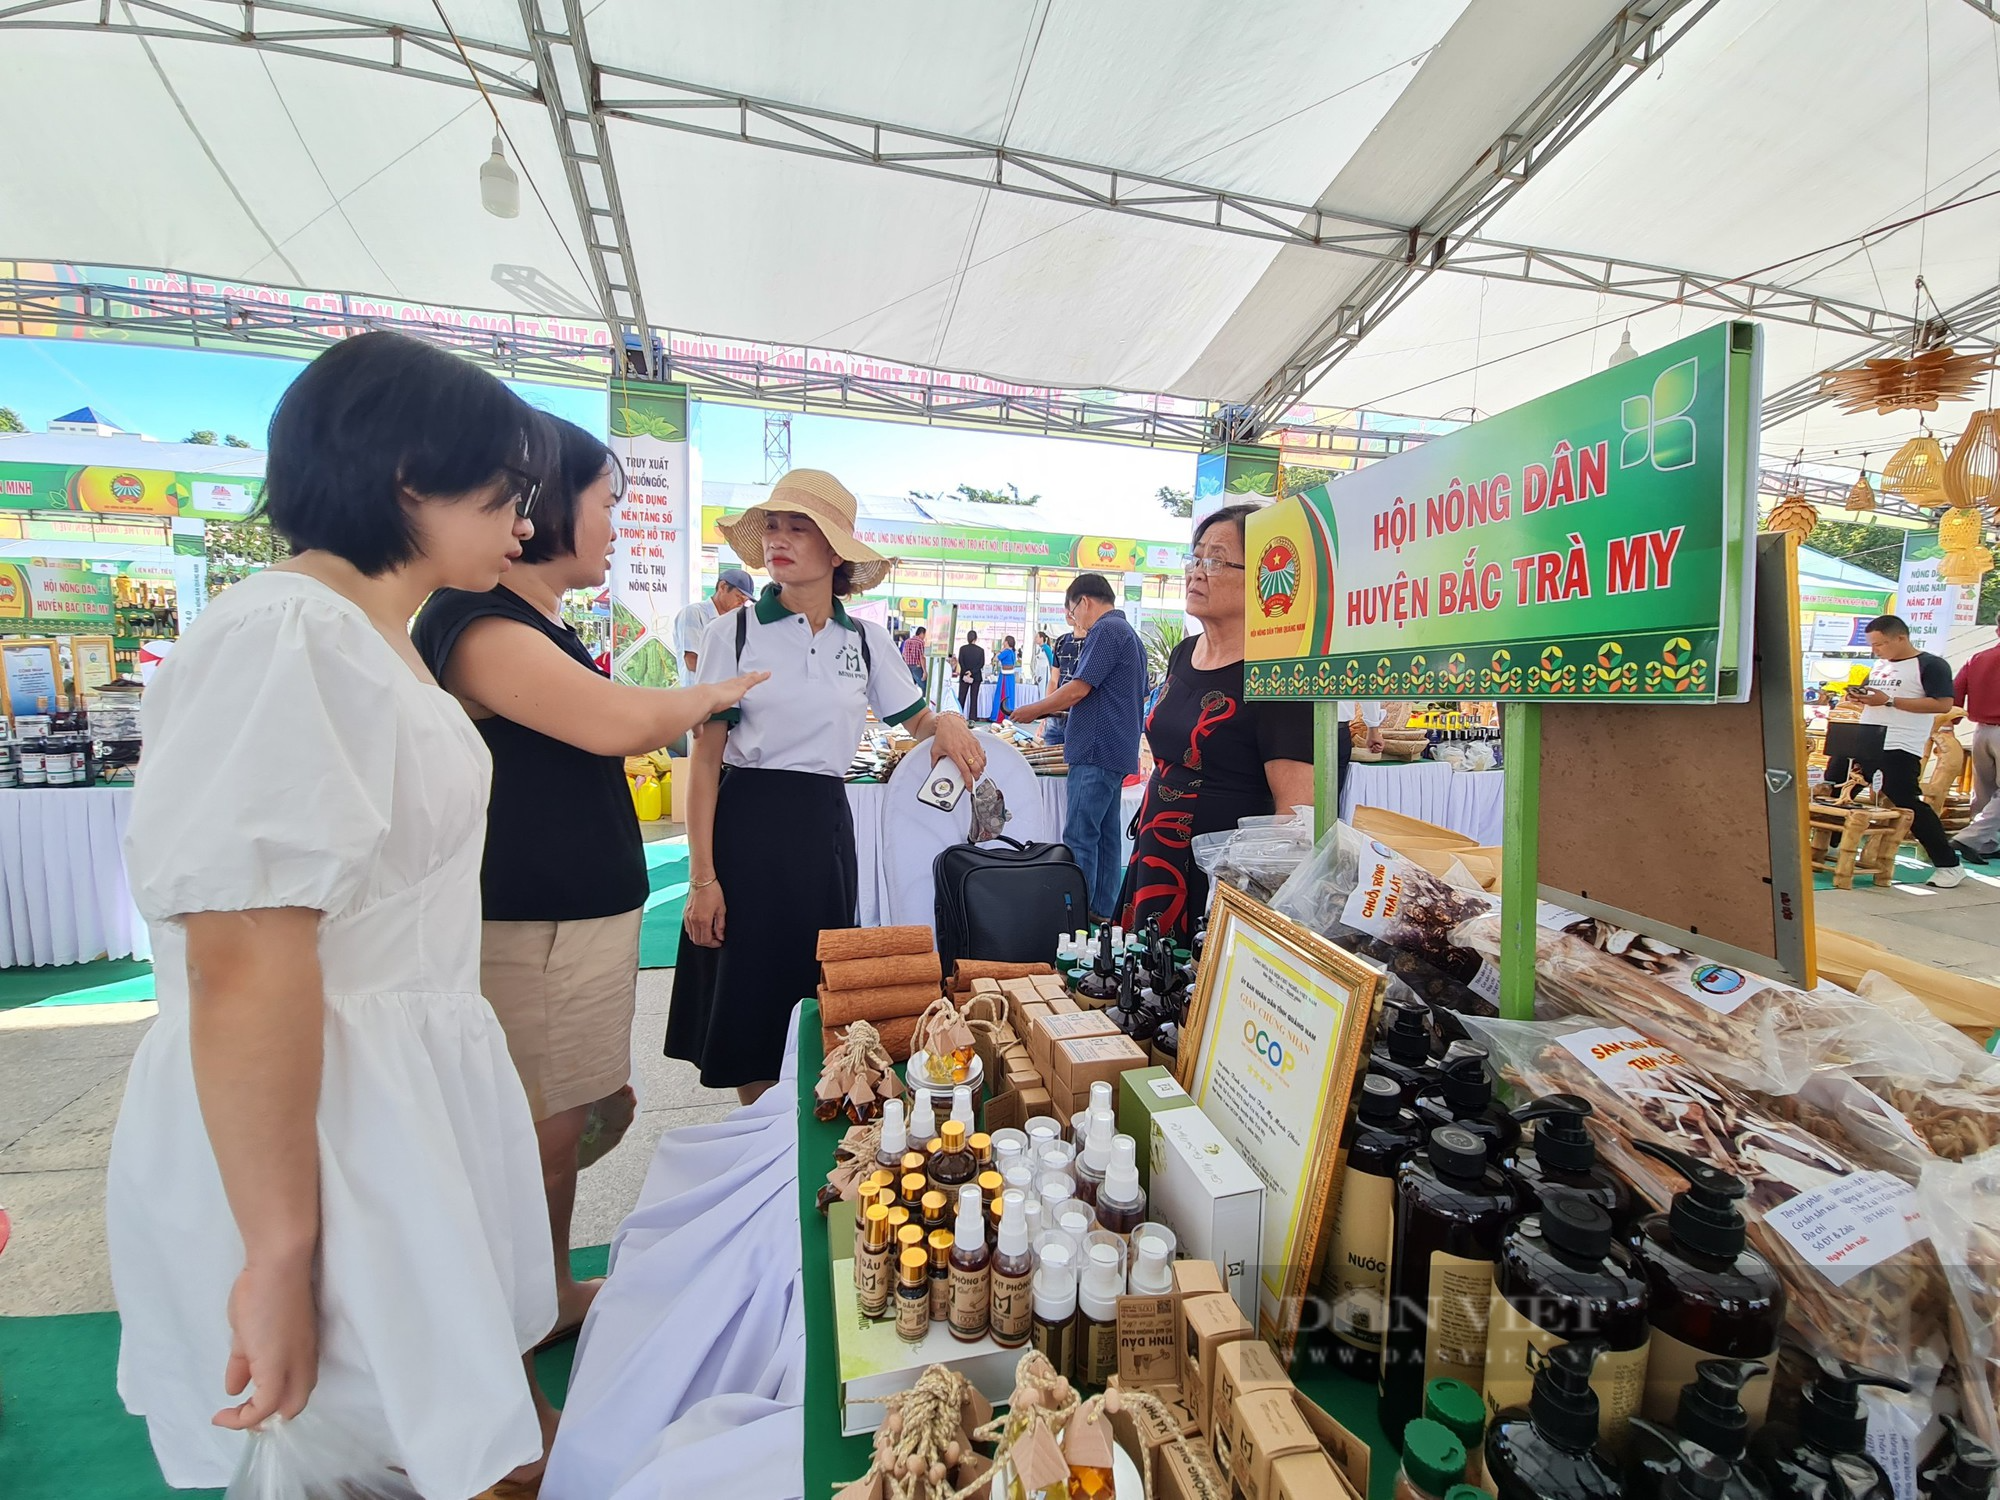 Hội Nông dân Quảng Nam khai mạc hội chợ nông nghiệp với 550 sản phẩm nhà nông các loại - Ảnh 5.